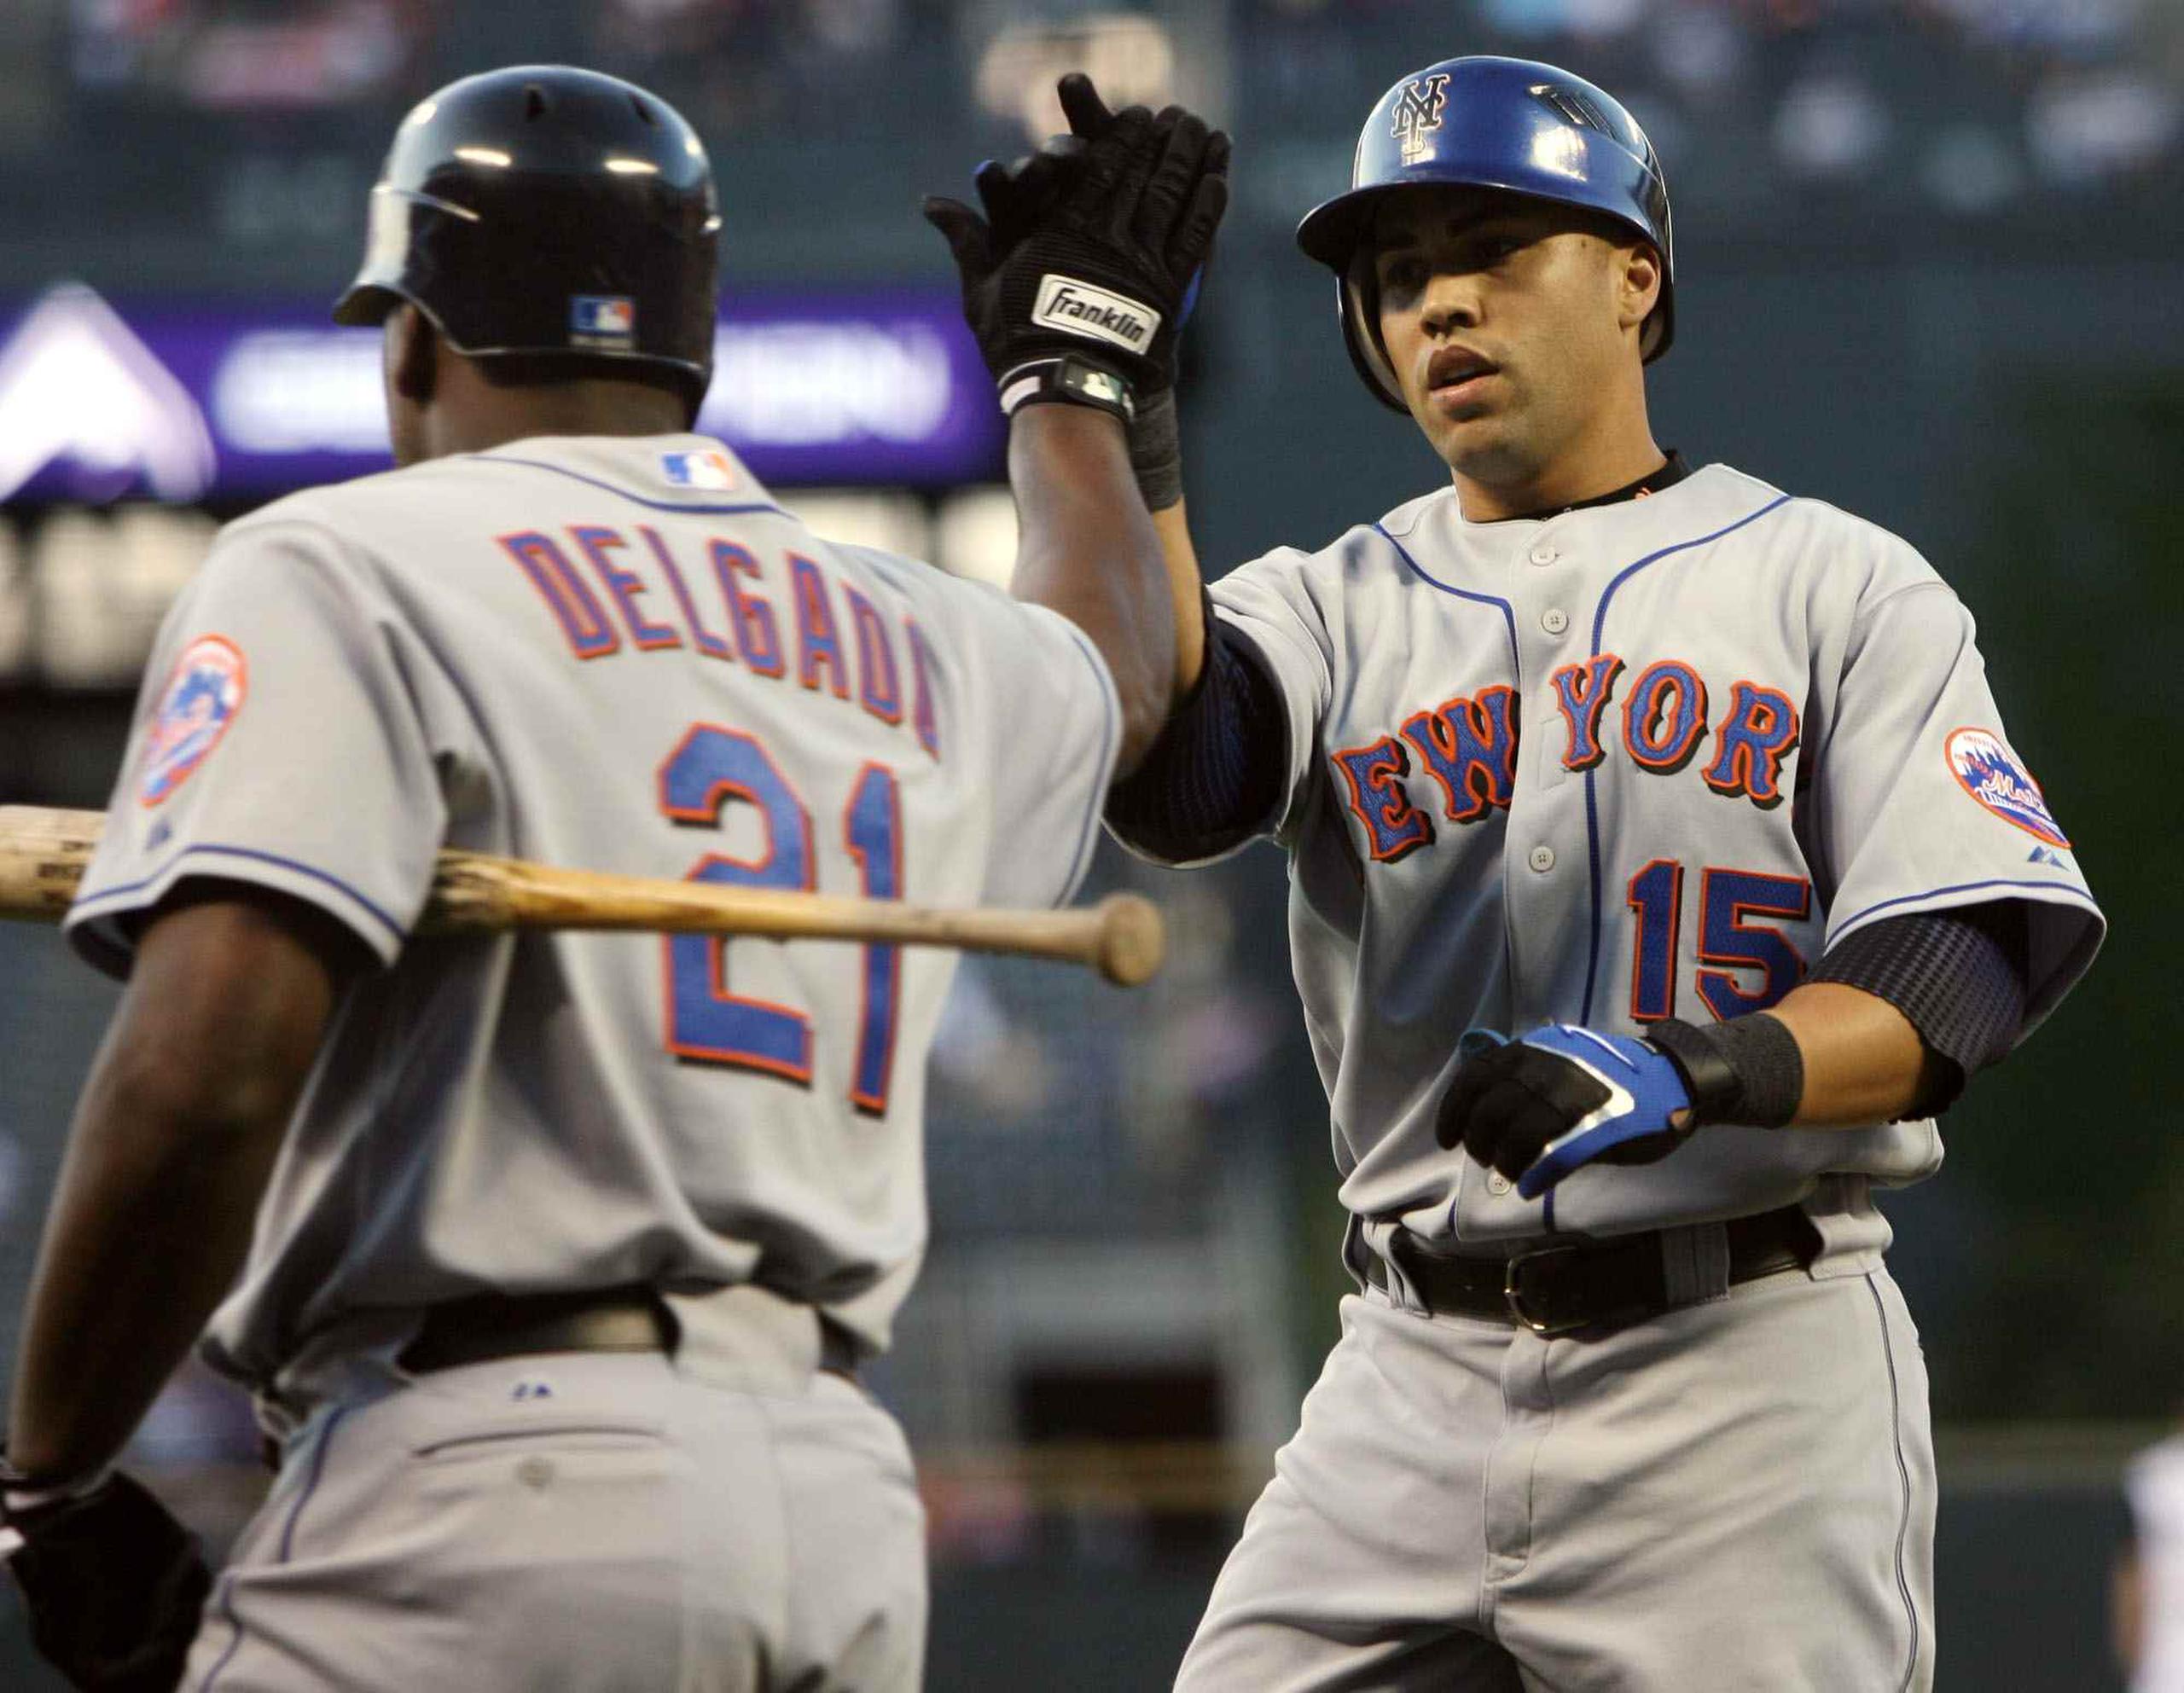 Beltrán jugó cinco temporadas con los Mets de Nueva York, entre el 2005 y el 2011. En el equipo, coincidió con Carlos Delgado para formar una temible dupla en la alineación.